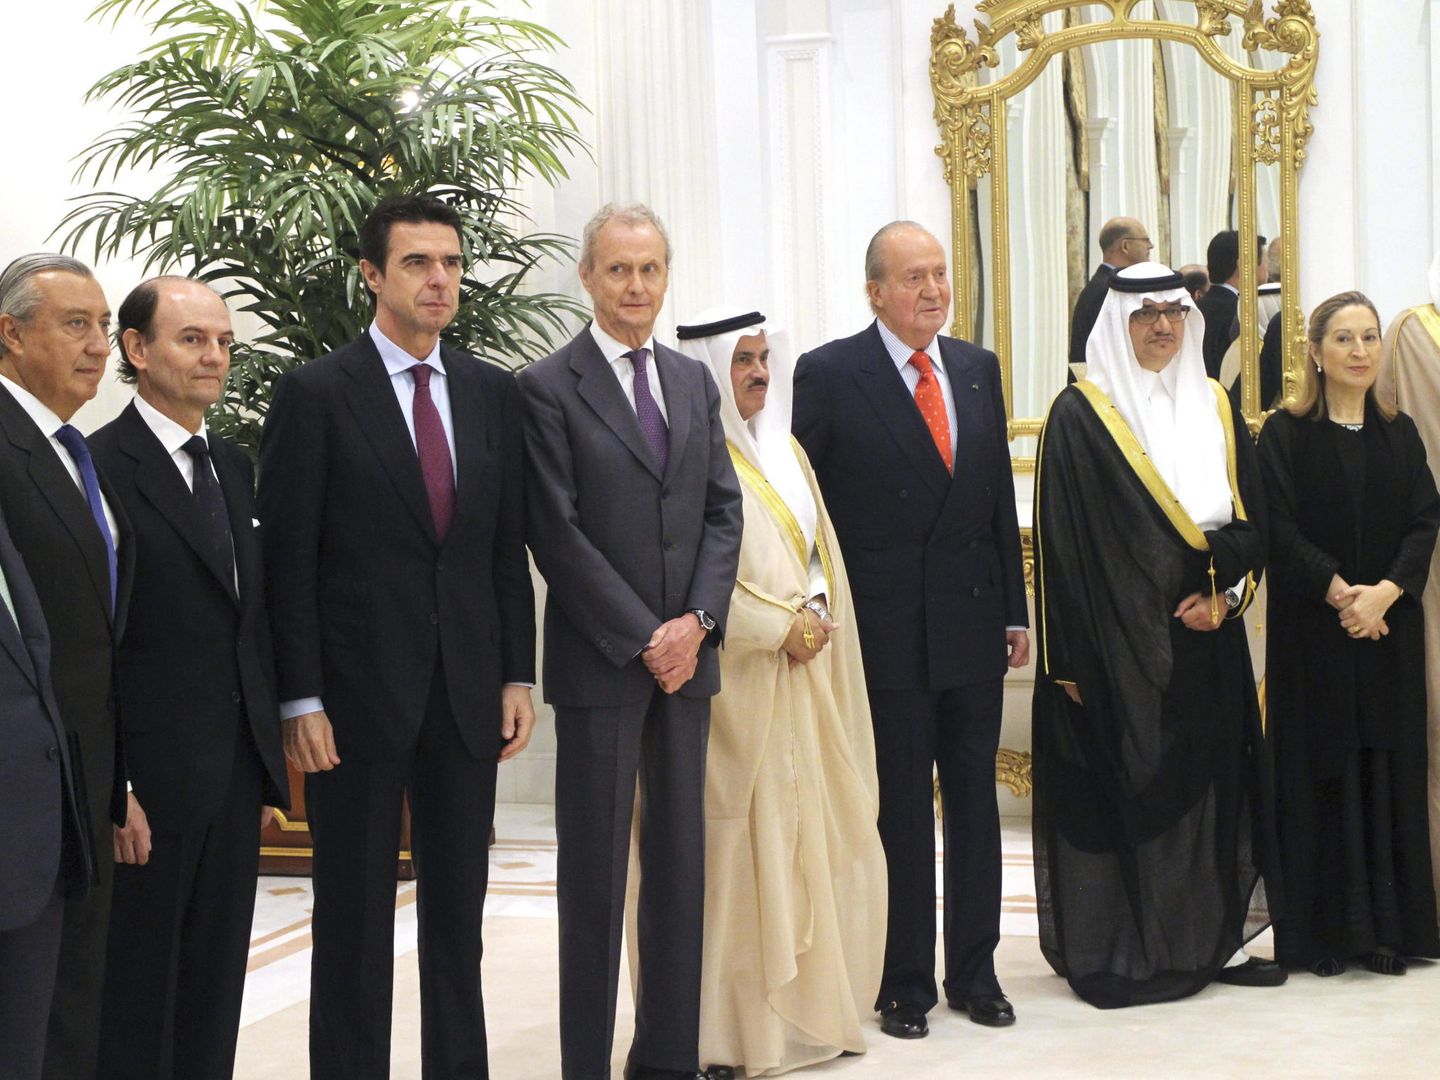 El rey Juan Carlos y miembros del Gobierno, durante la presentación del proyecto del AVE Meca-Medina. (EFE)